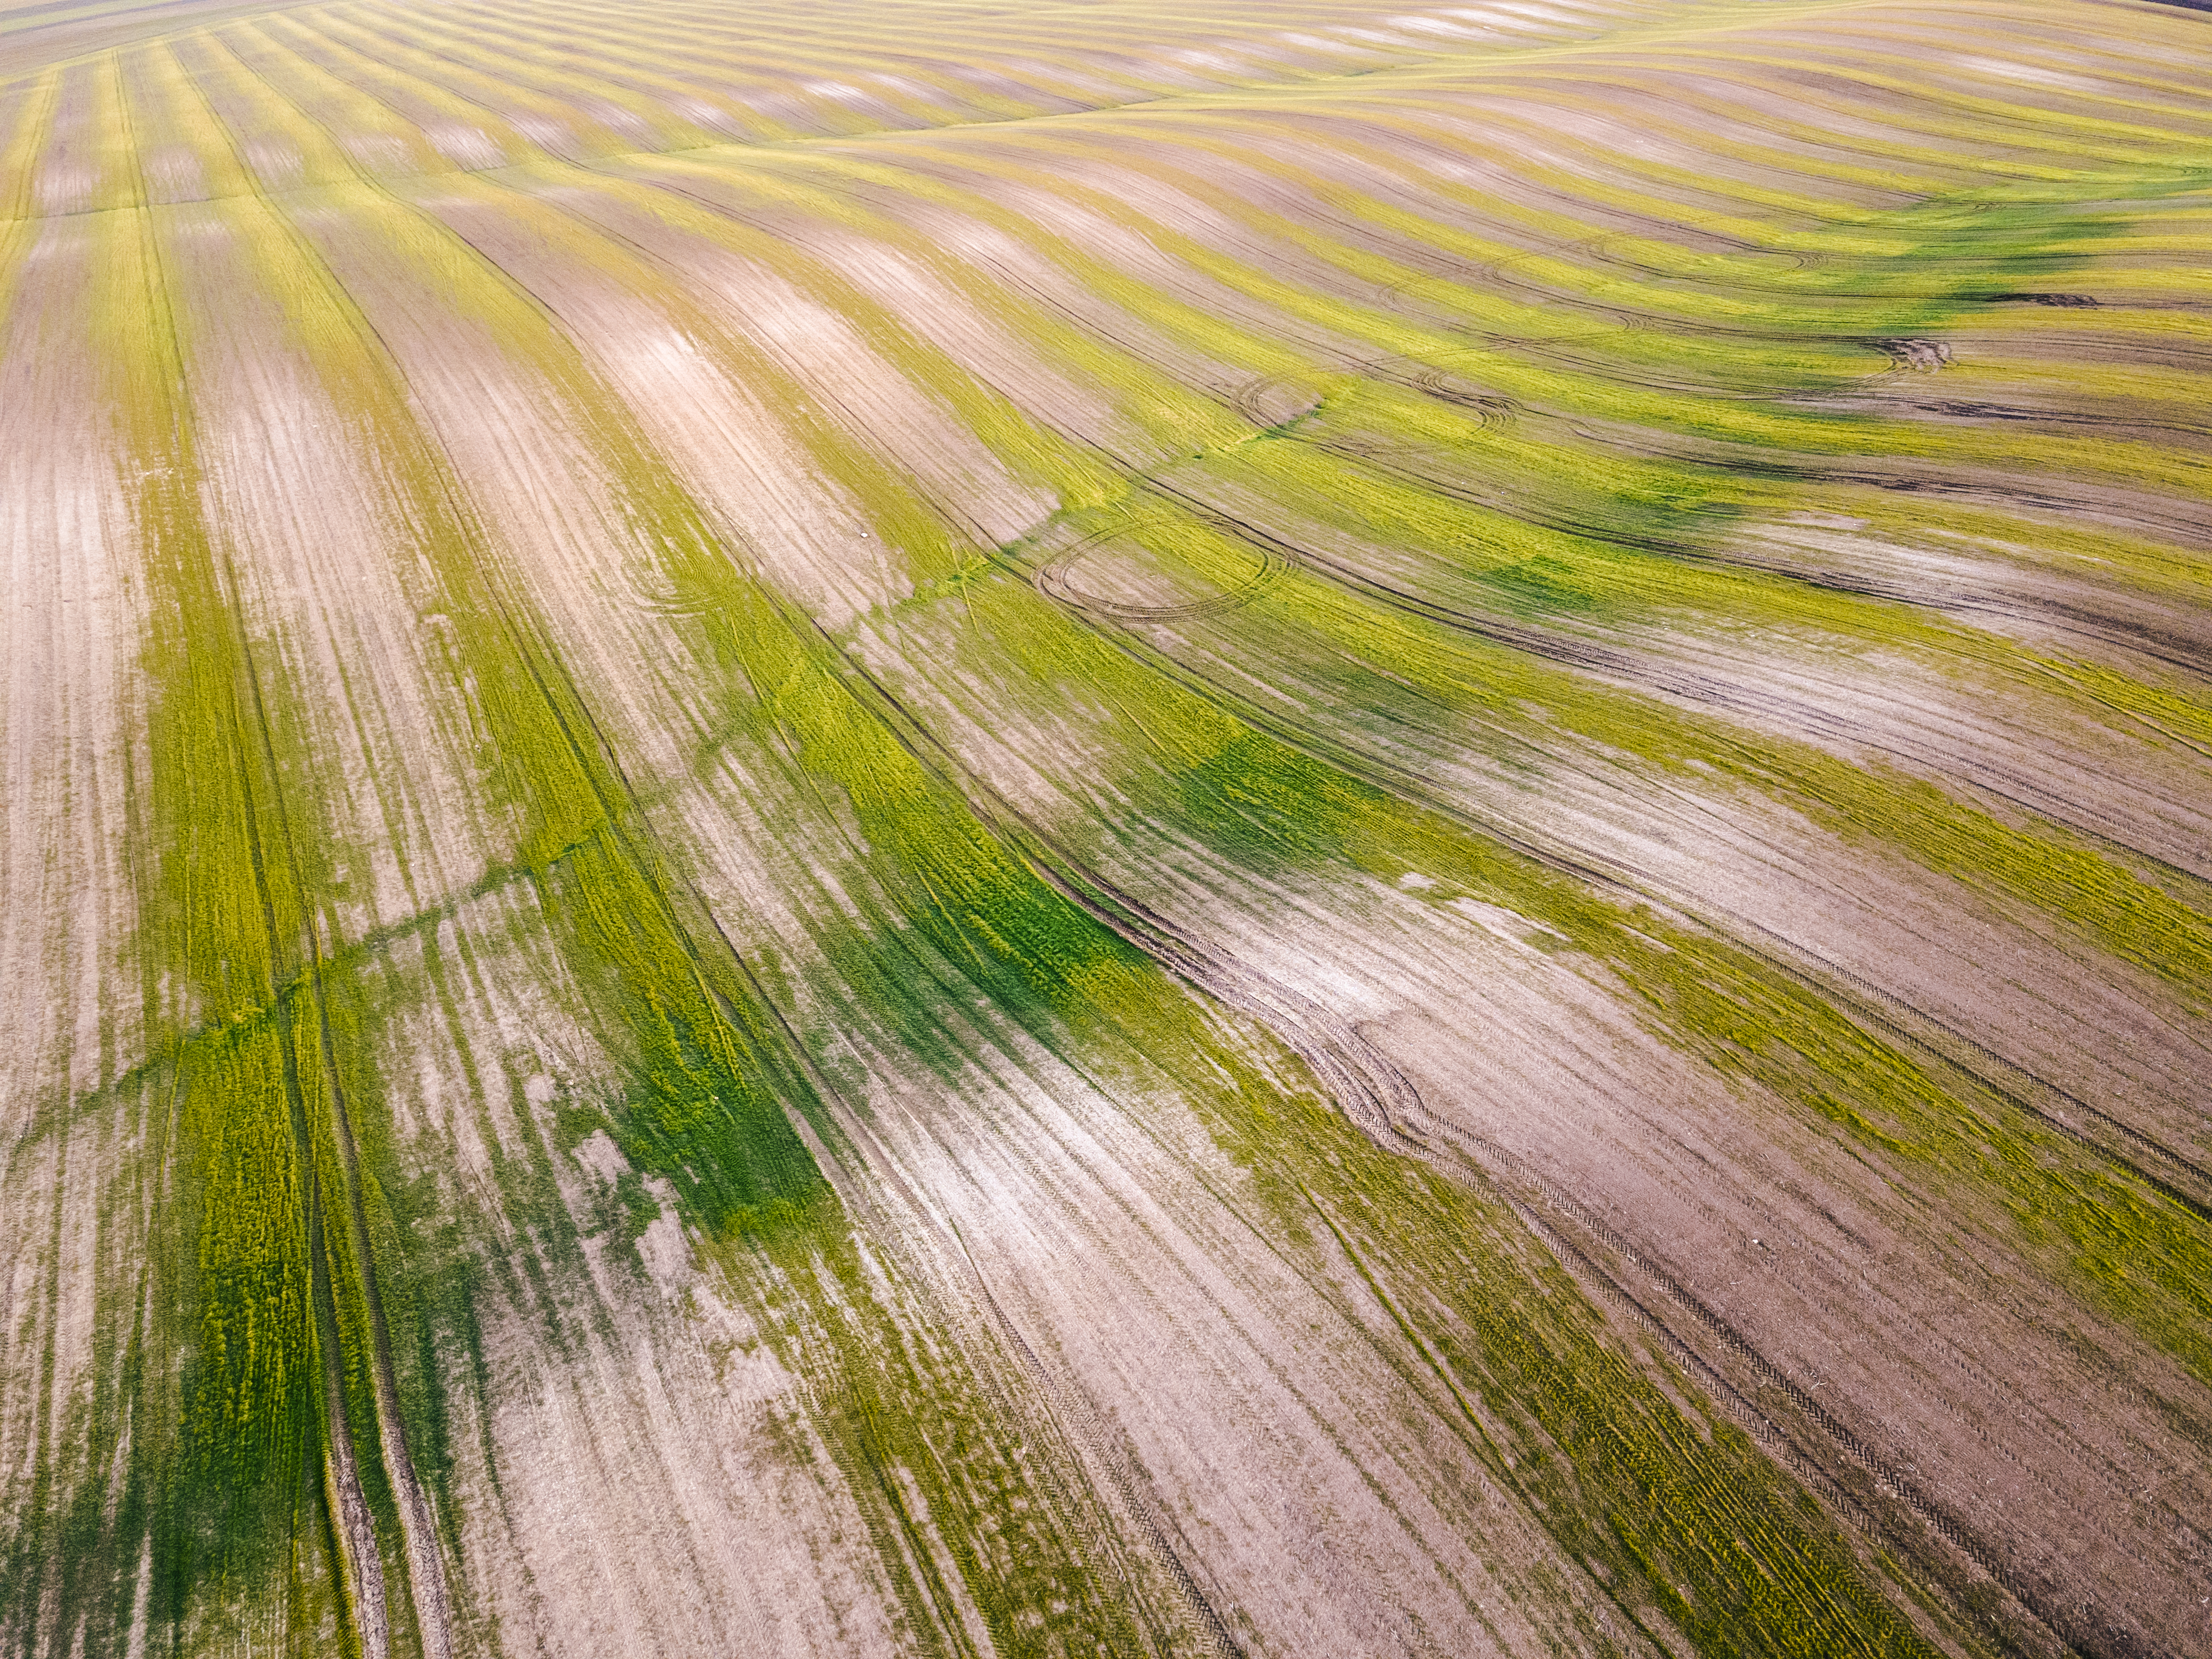 Vue aérienne de champs agricoles cultivés grâce à une nouvelle technologie agricole